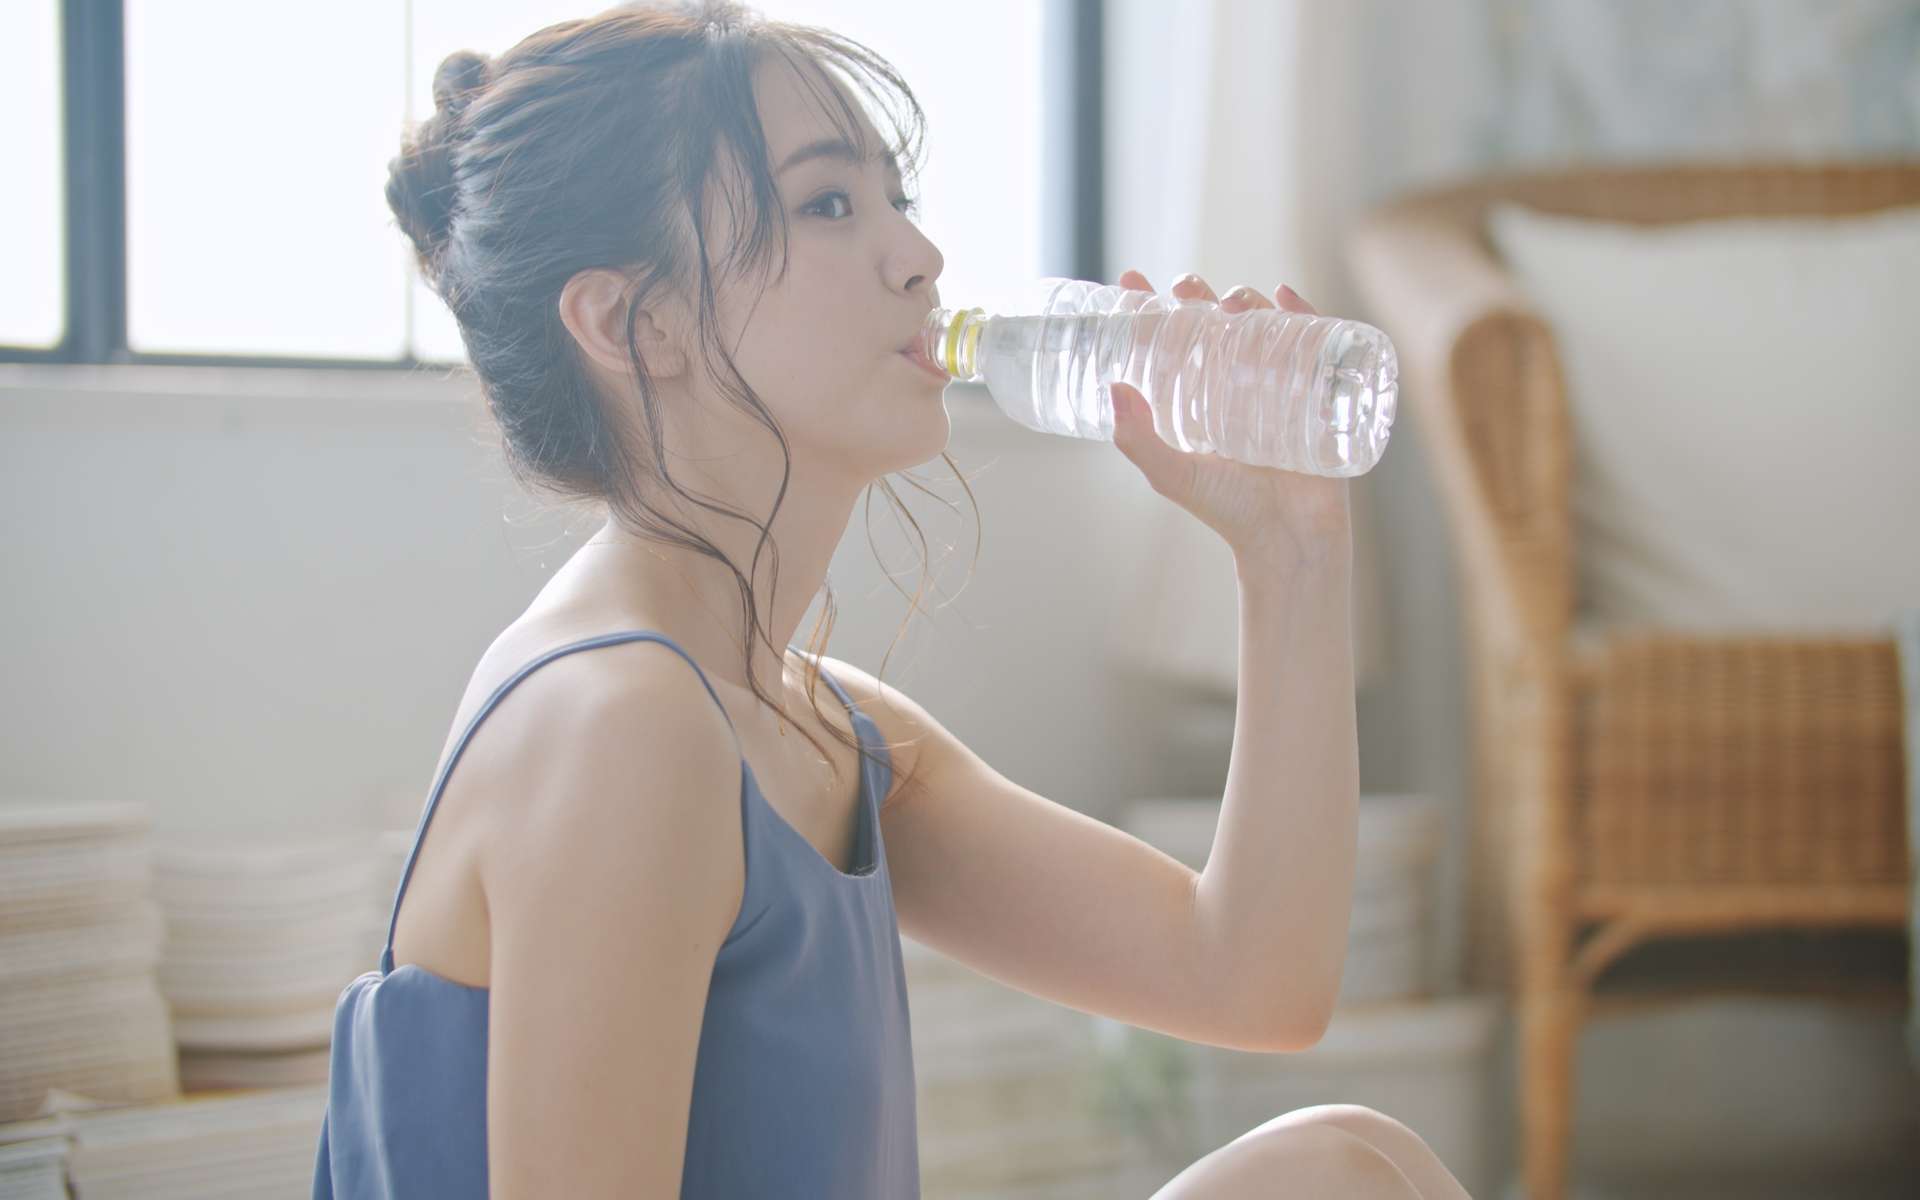 Ne pas boire assez d'eau expose à des problèmes de santé sérieux